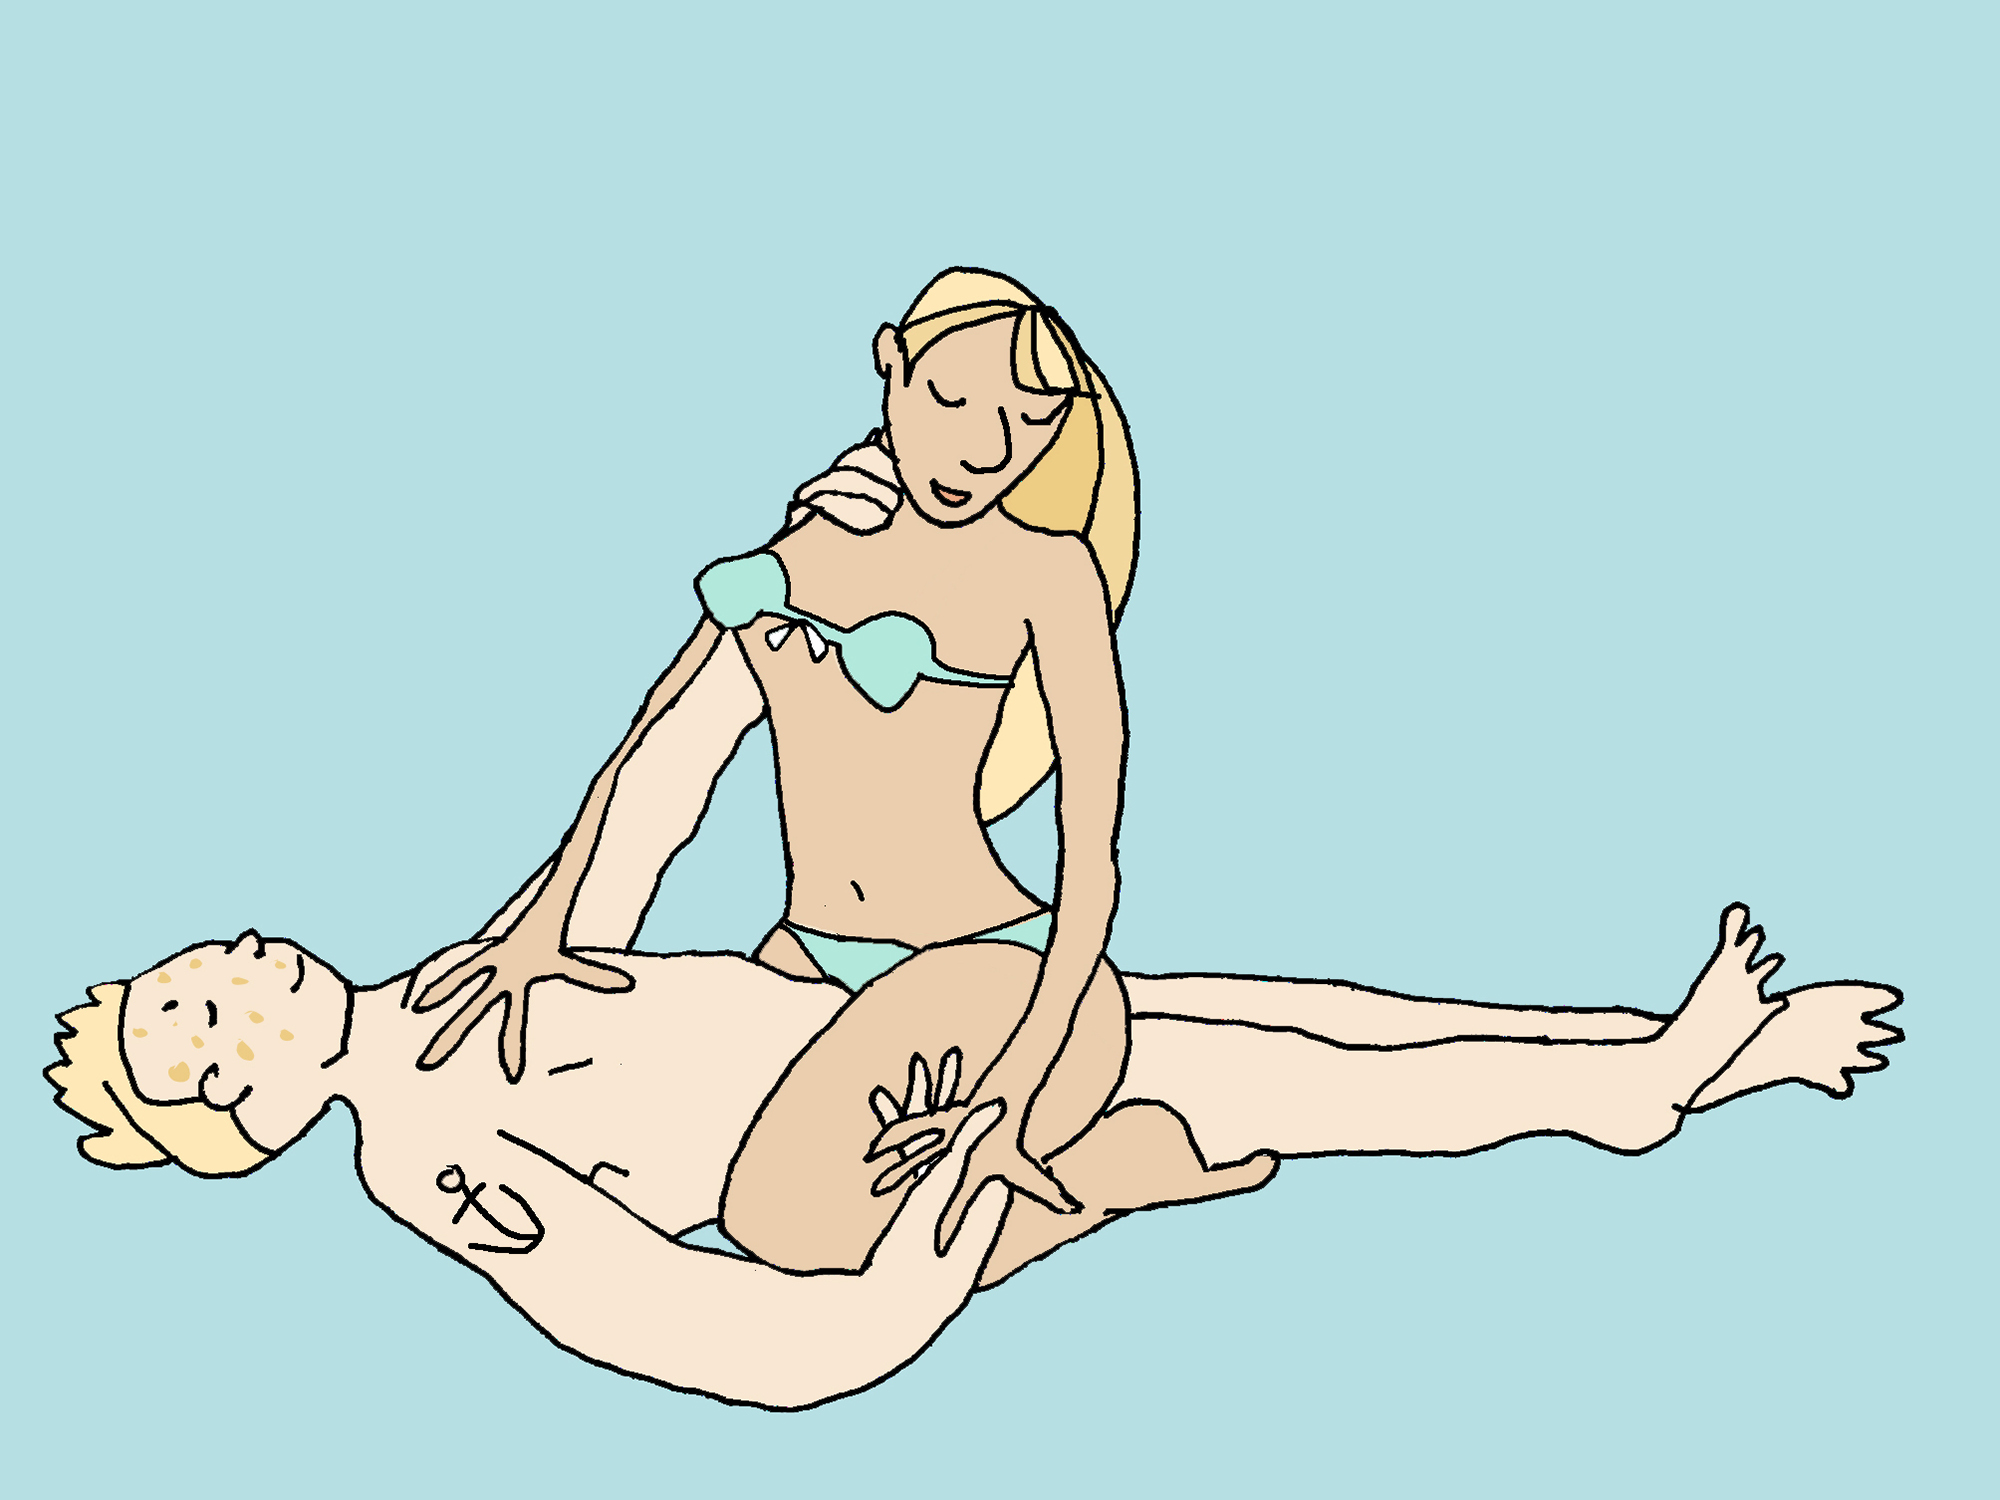 Ein nackter Mann liegt auf dem Rücken. Eine Frau in Unterwäsche sitzt in Reiterstellung auf ihm.